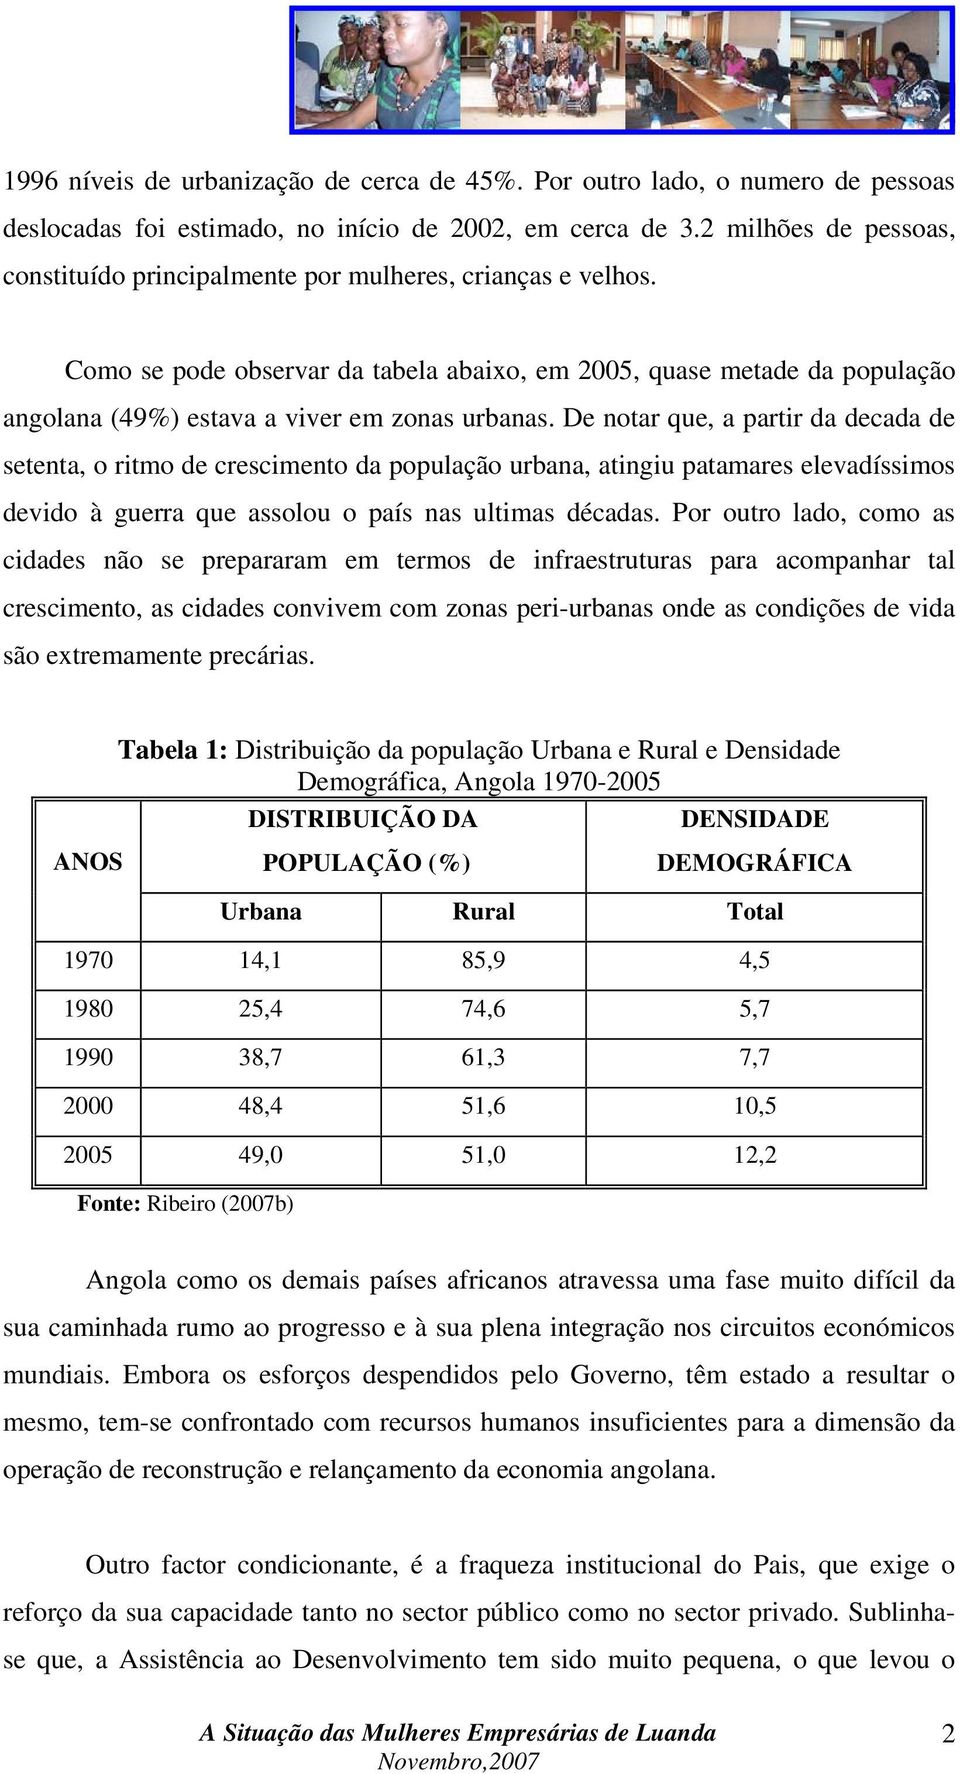 Como se pode observar da tabela abaixo, em 2005, quase metade da população angolana (49%) estava a viver em zonas urbanas.